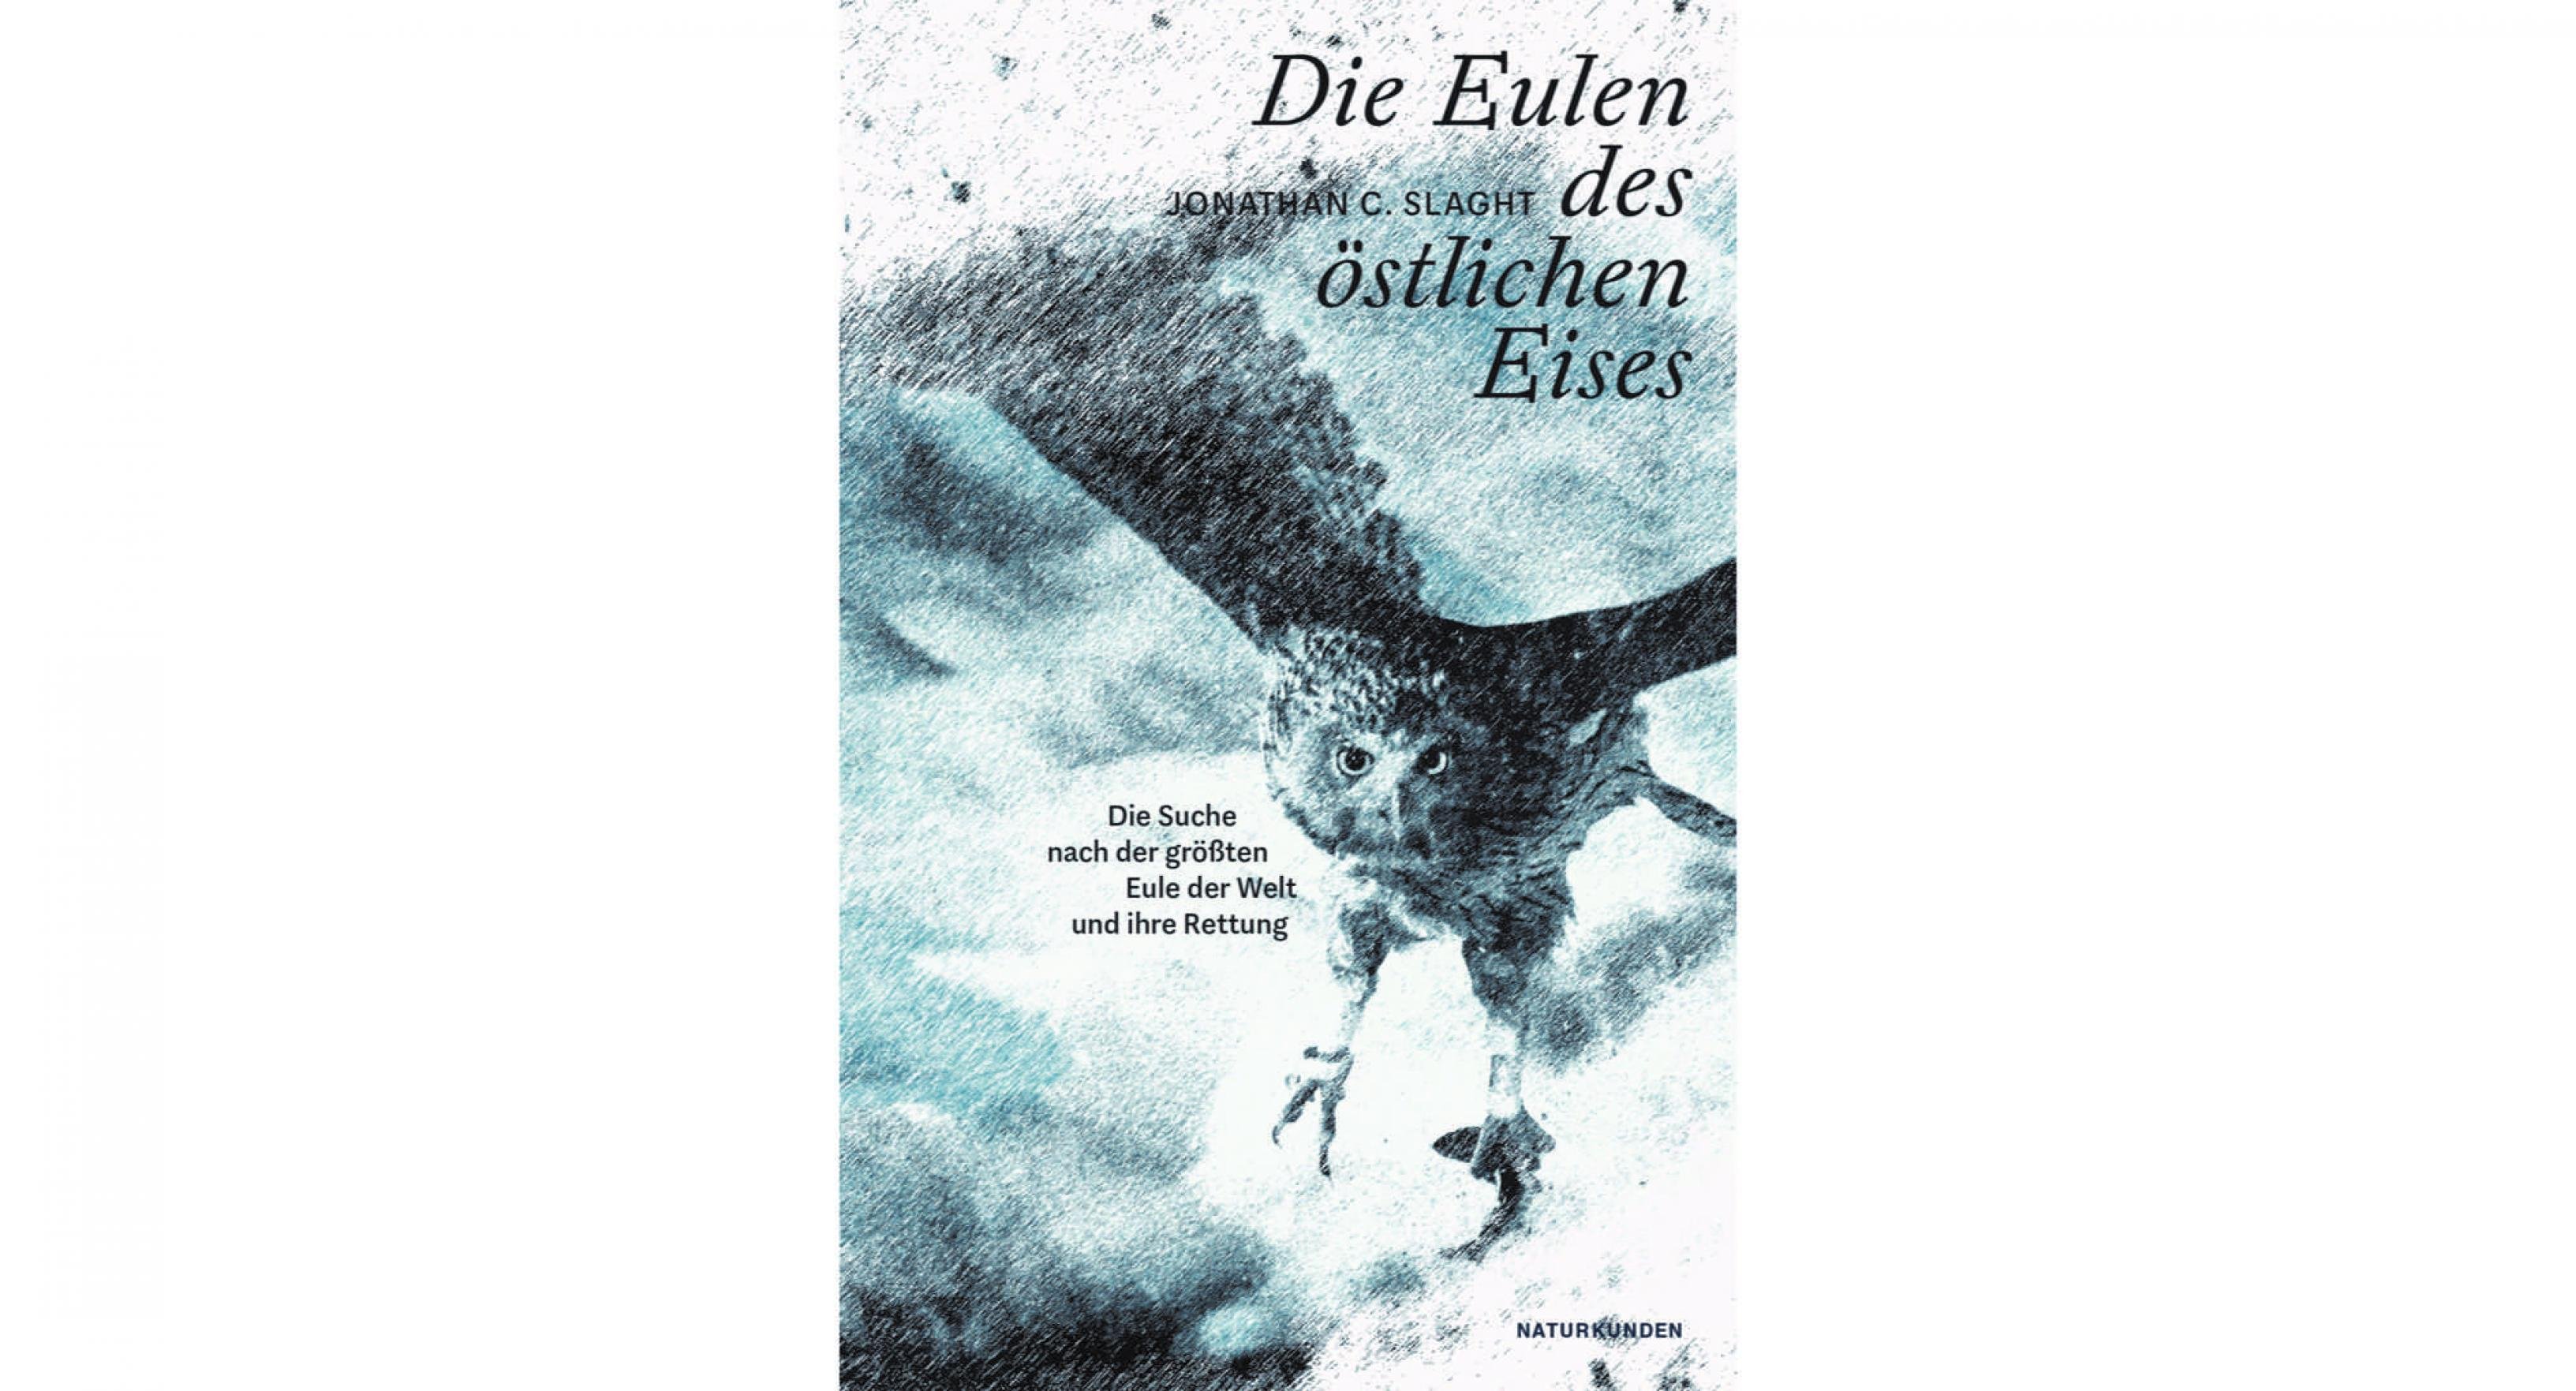 Das Cover des Naturkunden-Buch „Die Eulen des östlichen Eises“ zeigt eine gezeichnete Eule, die durch ein Schneetreiben fliegt.